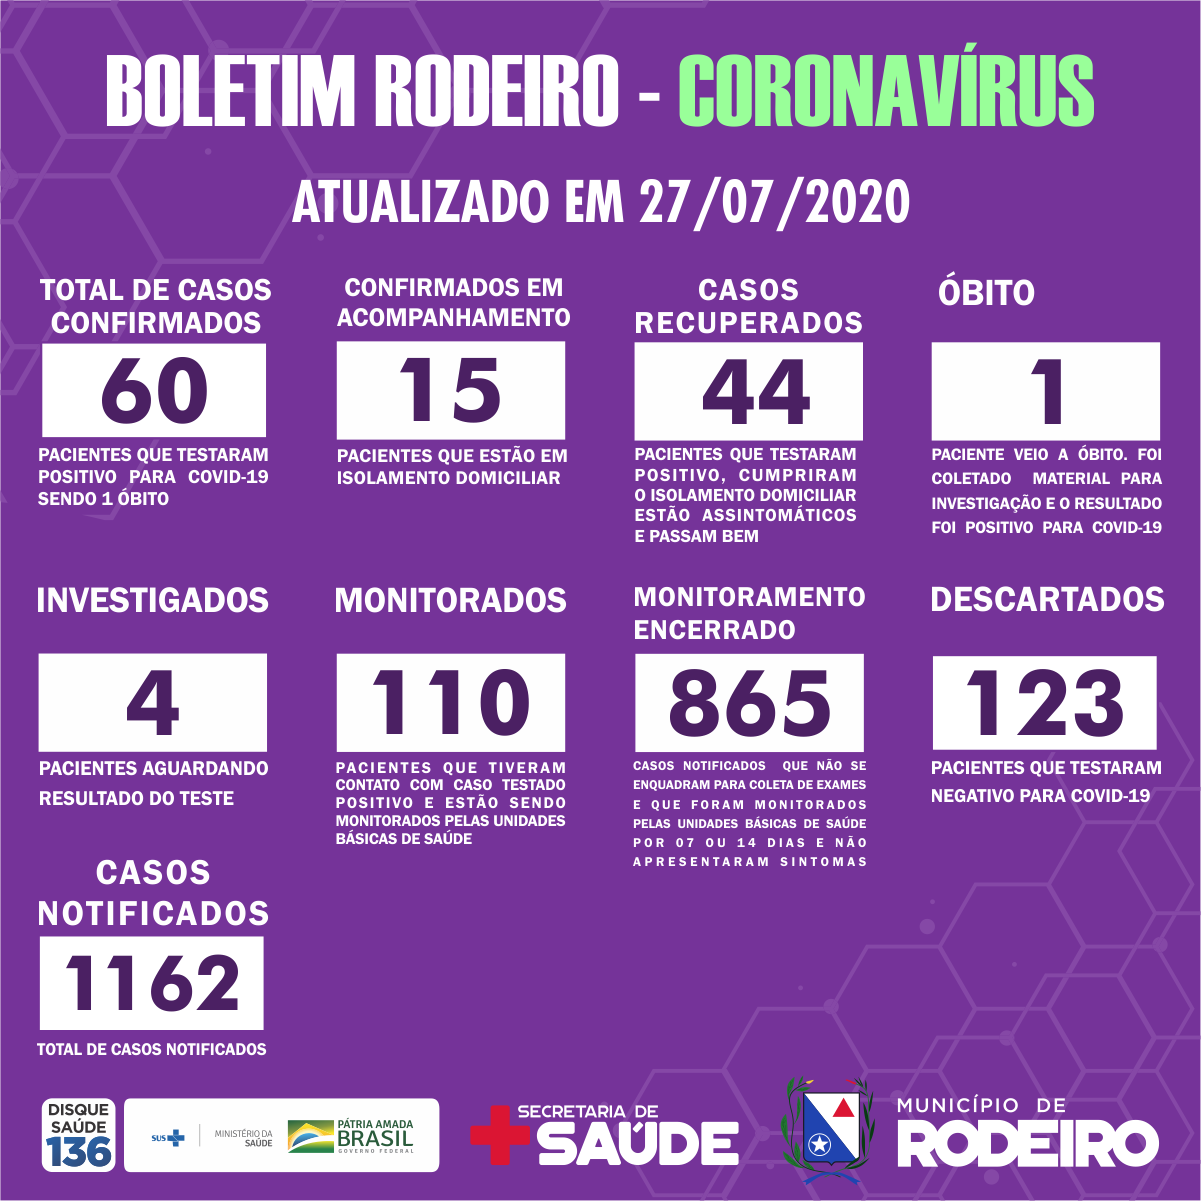 Boletim Epidemiológico do Município de Rodeiro coronavírus, atualizado em 27/07/2020